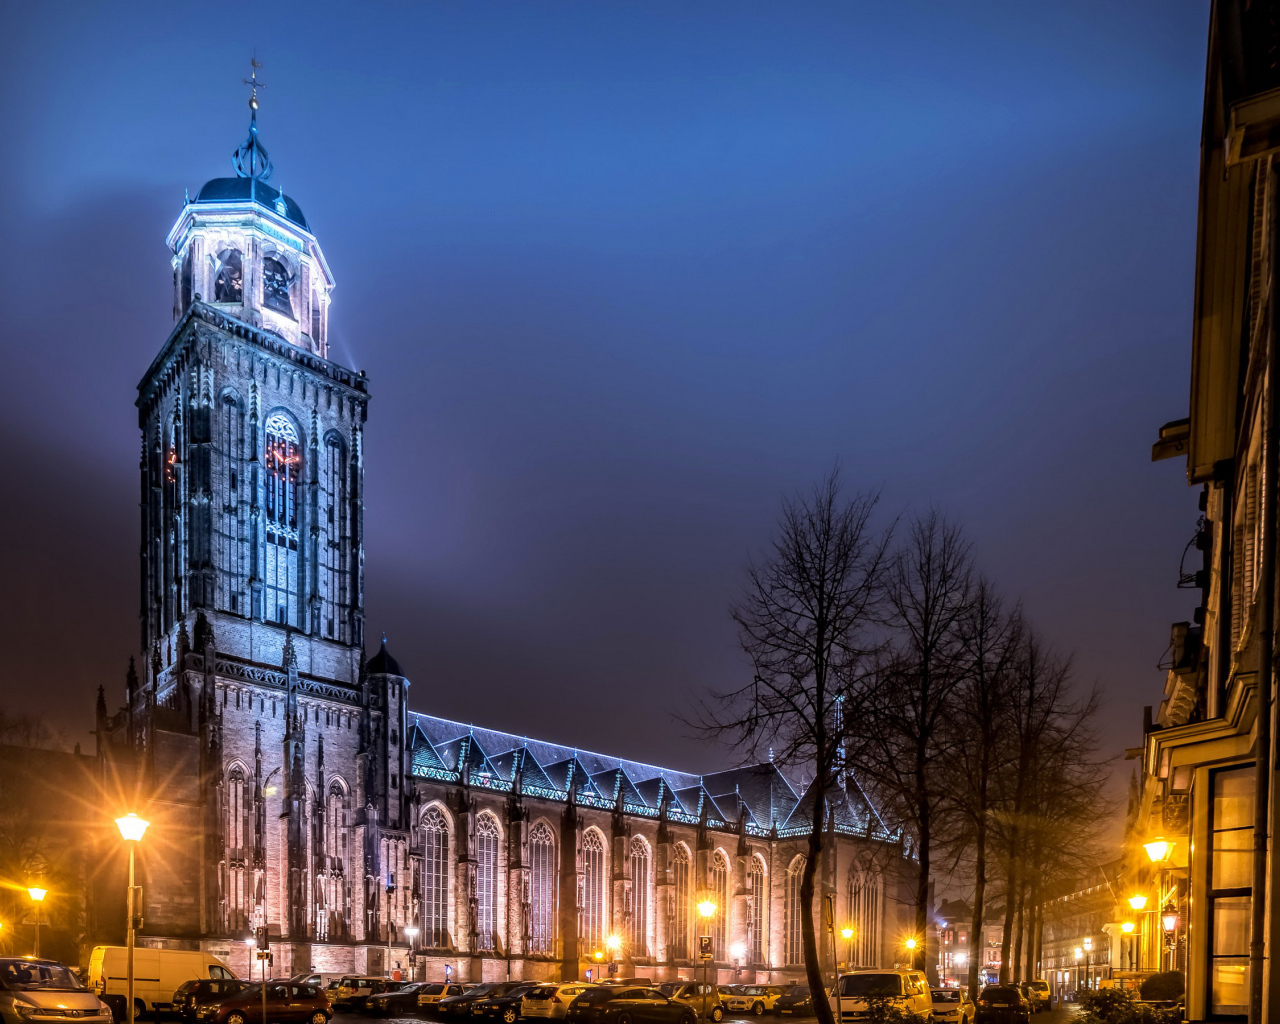 Храм в свете фонарей на ночной улице в городе Девентер, Нидерланды